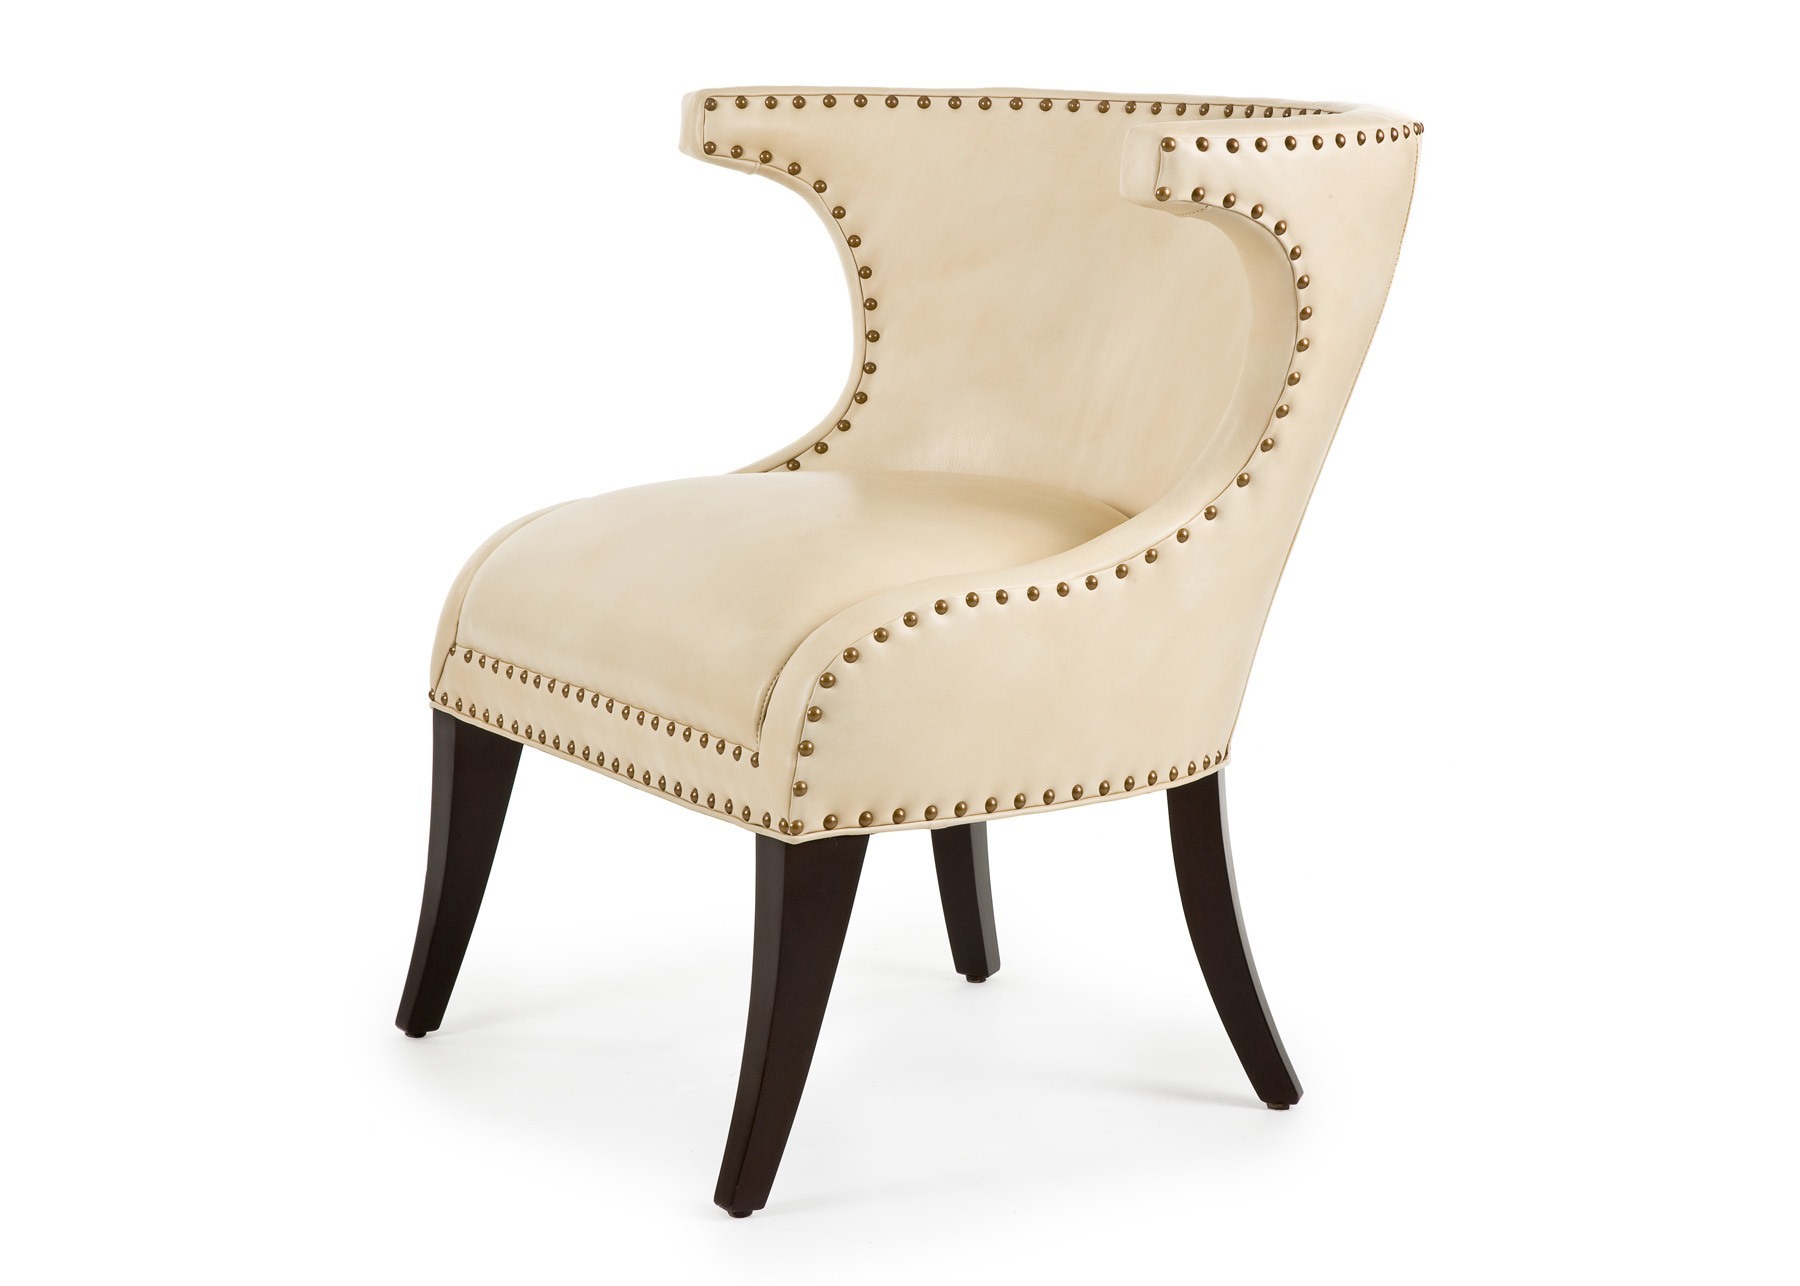 Cabot Wrenn Legends Flirt Lounge Chair